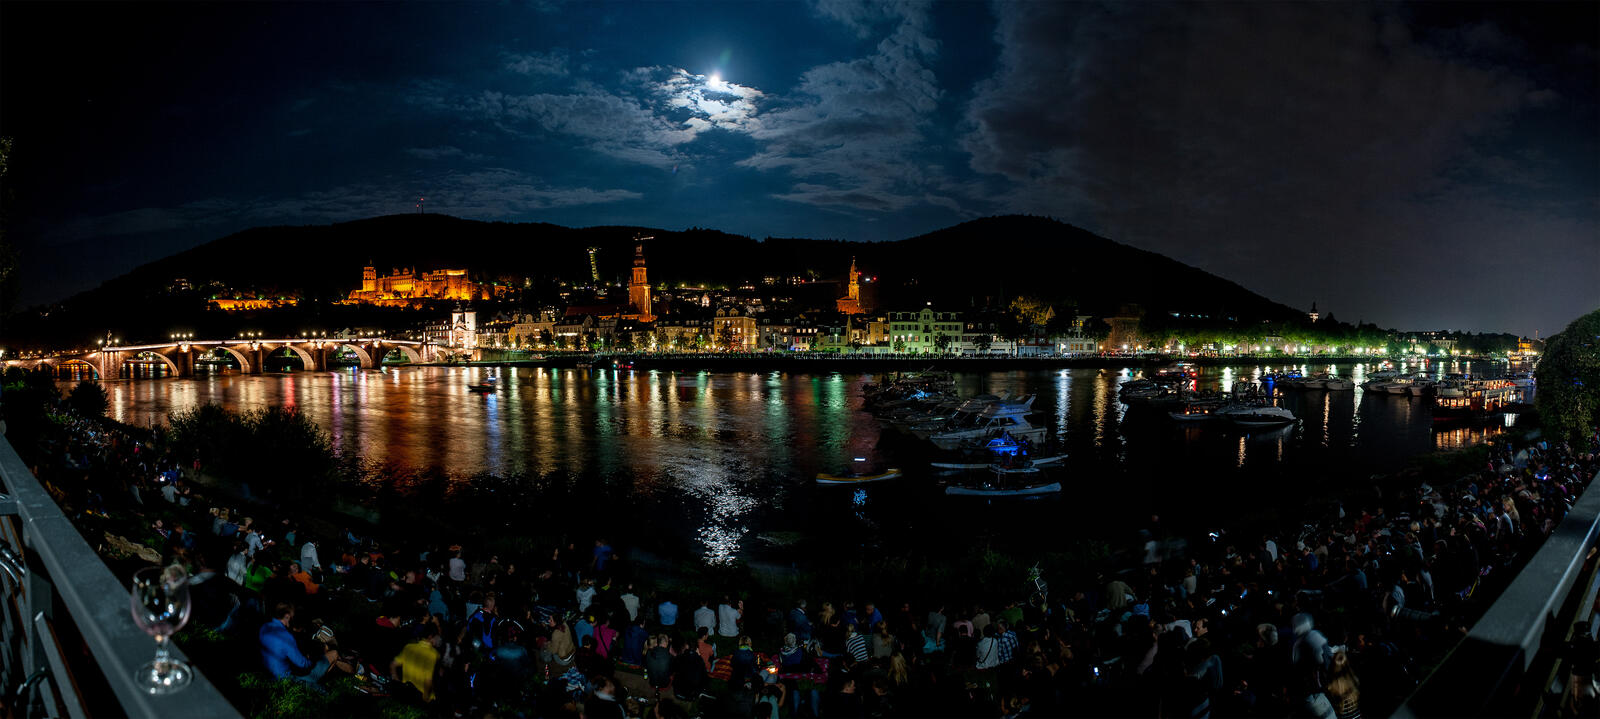 Обои Heidelberg at night лунная ночь облака на рабочий стол